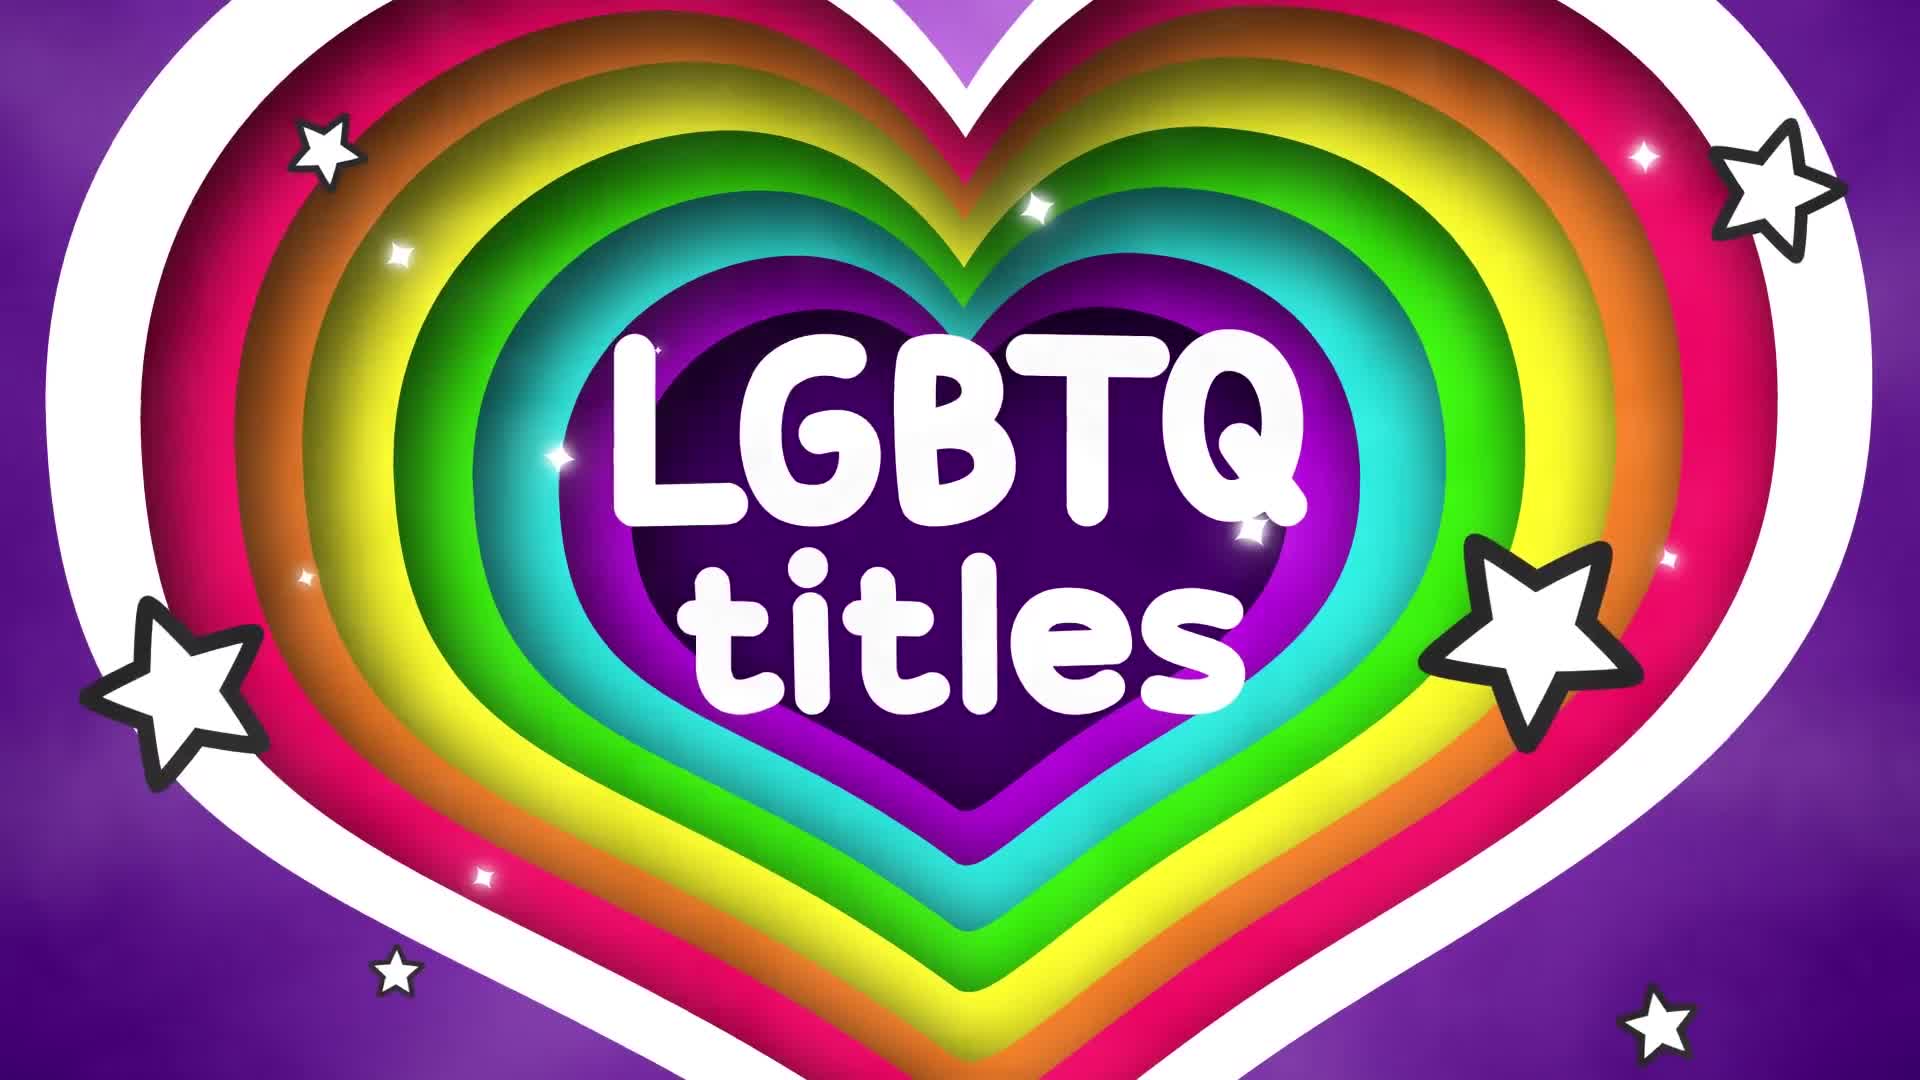 LGBTQ Titles And Scenes | Premiere Pro MOGRT Videohive 27823556 Premiere Pro Image 1